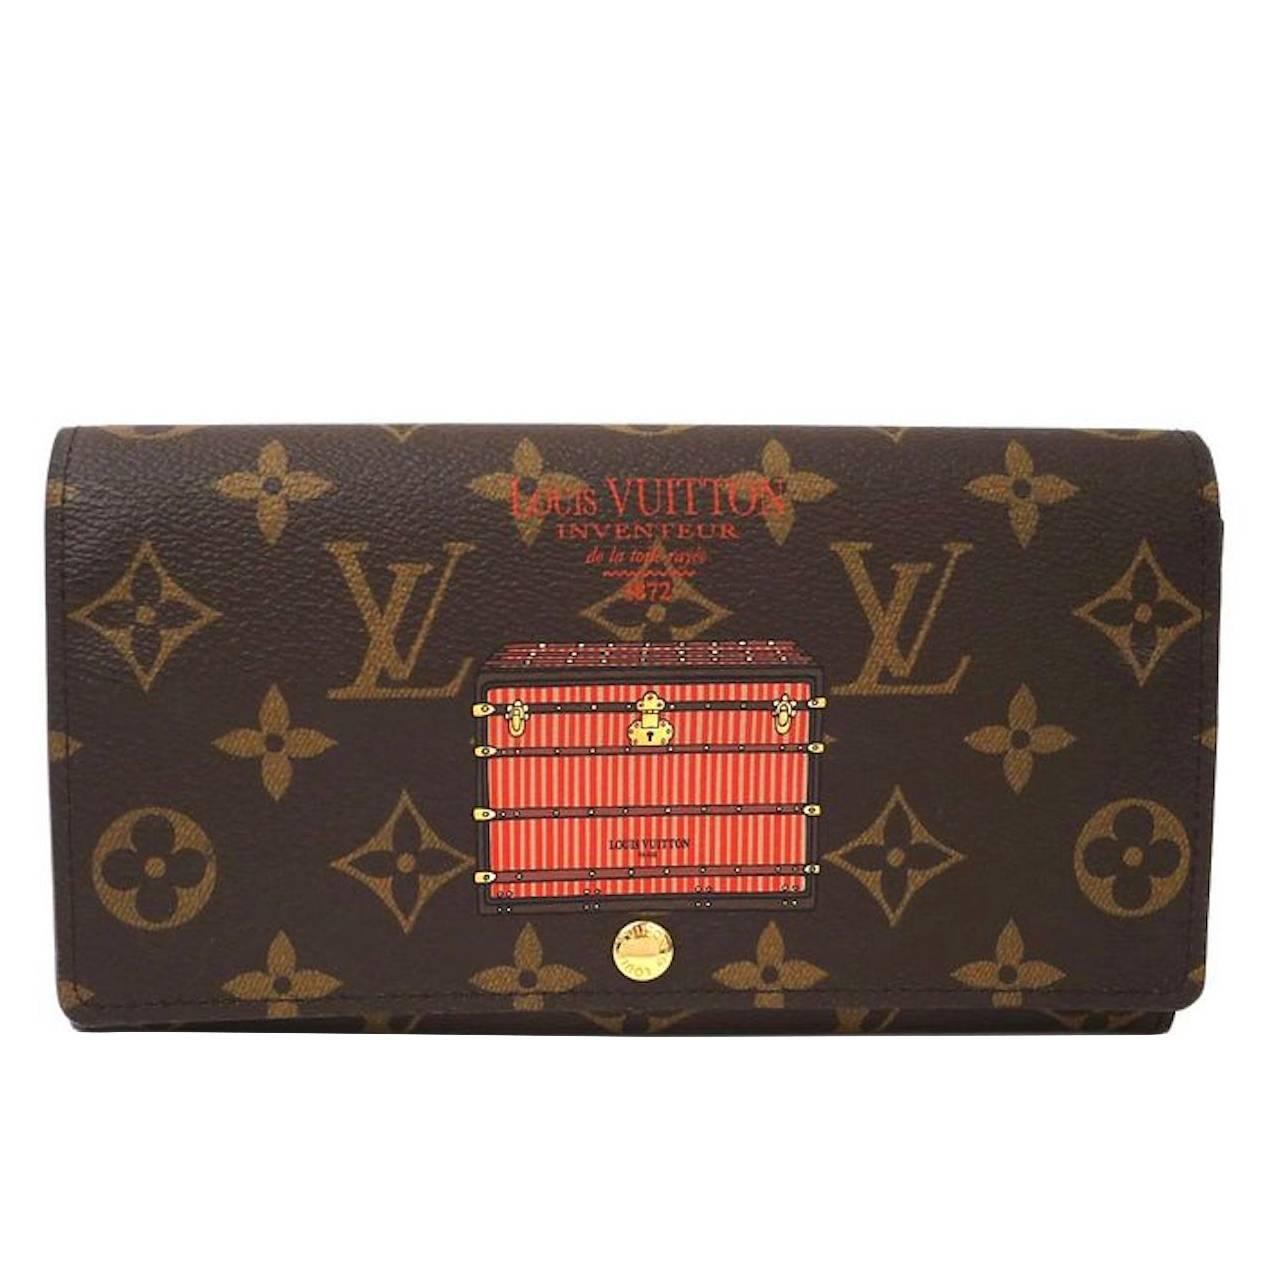 Louis Vuitton NEW Monogram Canvas Inventeur Trunk Wallet in Box